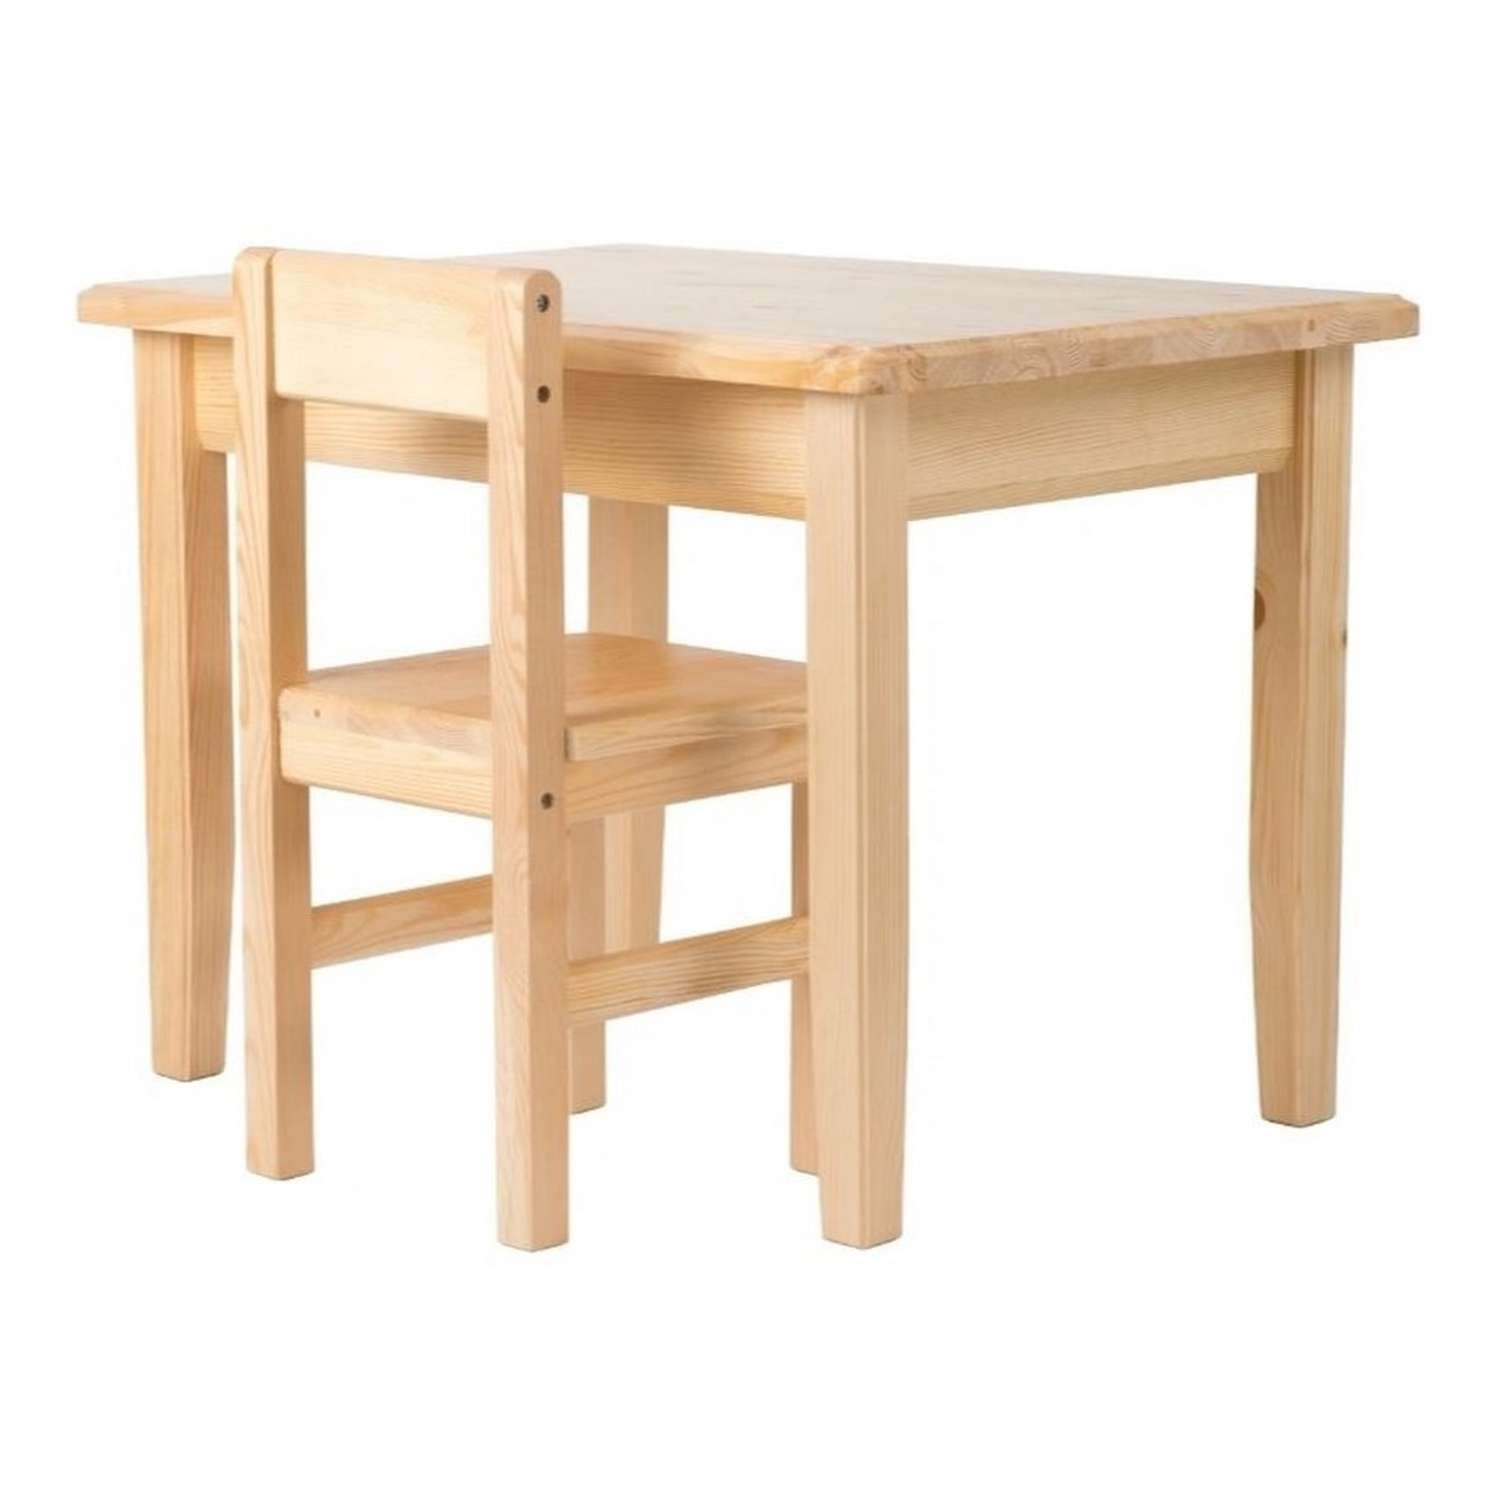 Набор Мебель для дошколят стол со стульчиком для детей от 3 до 5 лет - фото 2